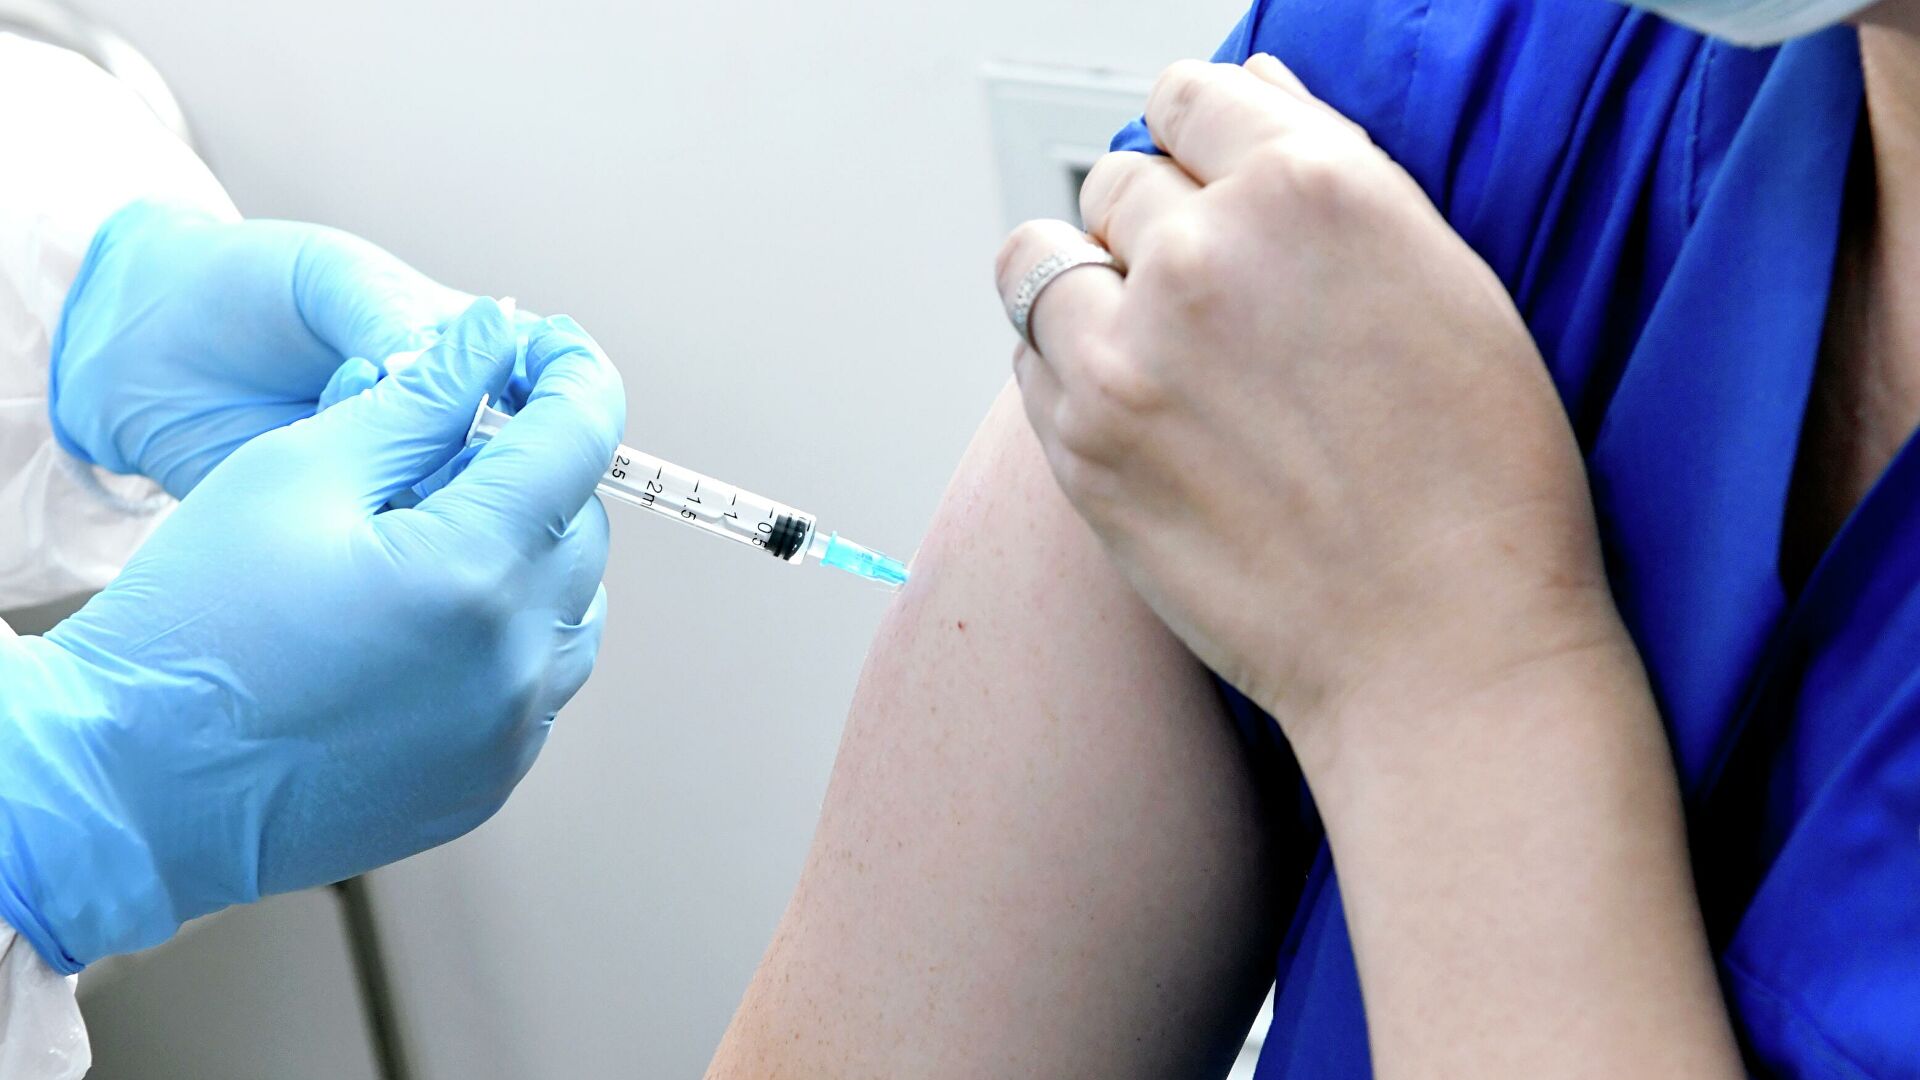 Власти уезда Ботошаны, расположенного в близости от румынской границы, сообщили, что из трех десятков вакцинированных на сегодняшний день жителей населенного пункта 20 молдаван.